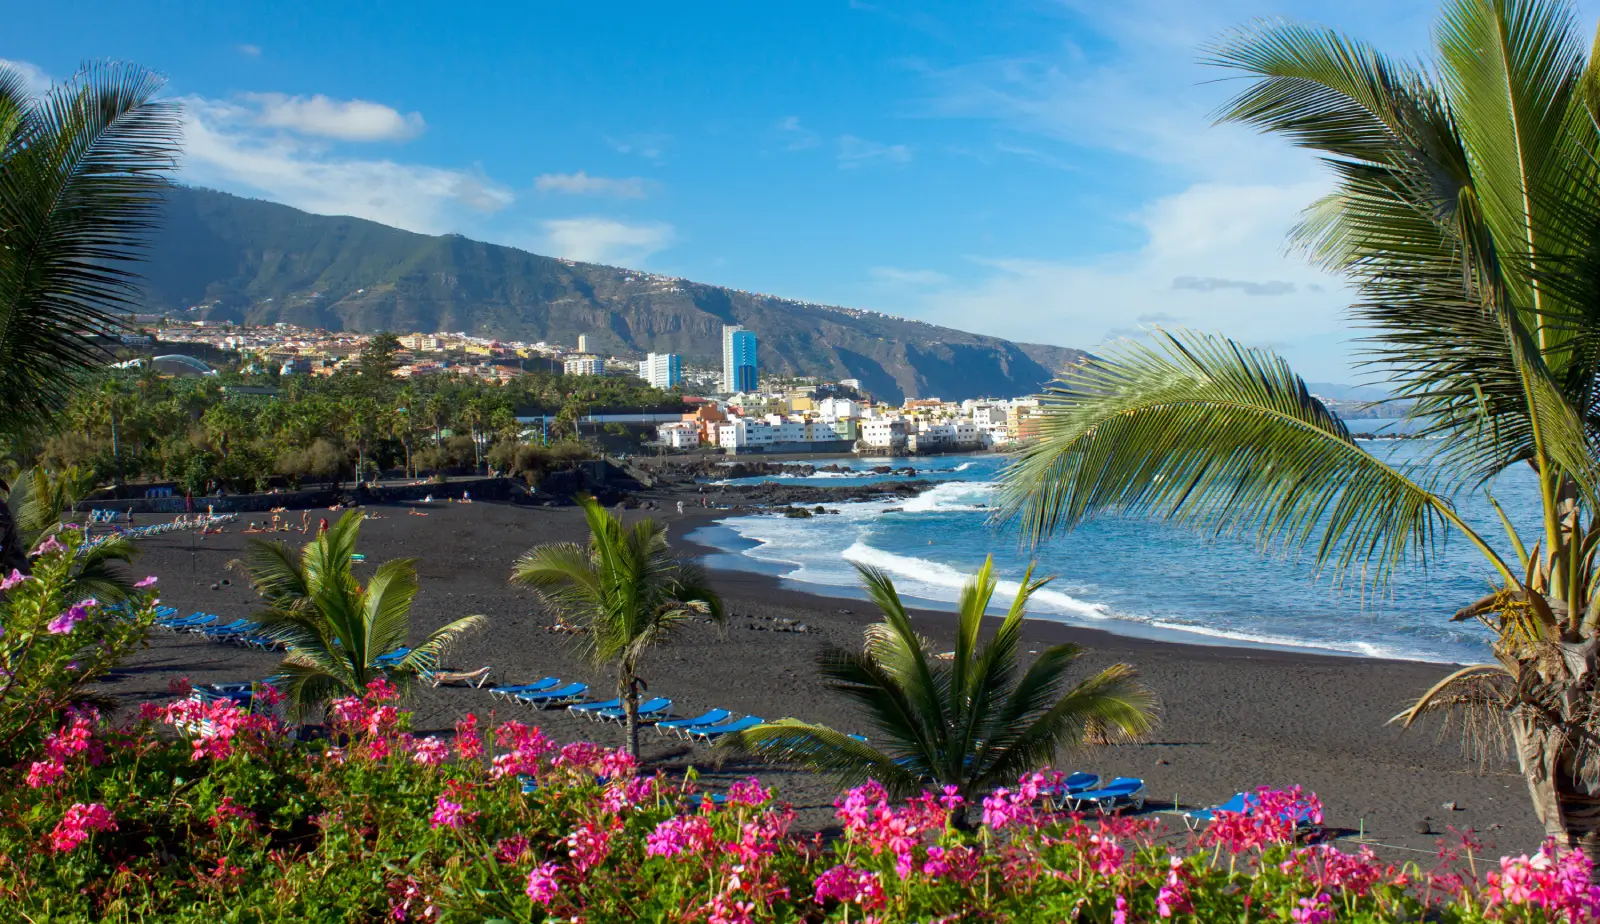 Playa Jardin in Tenerife